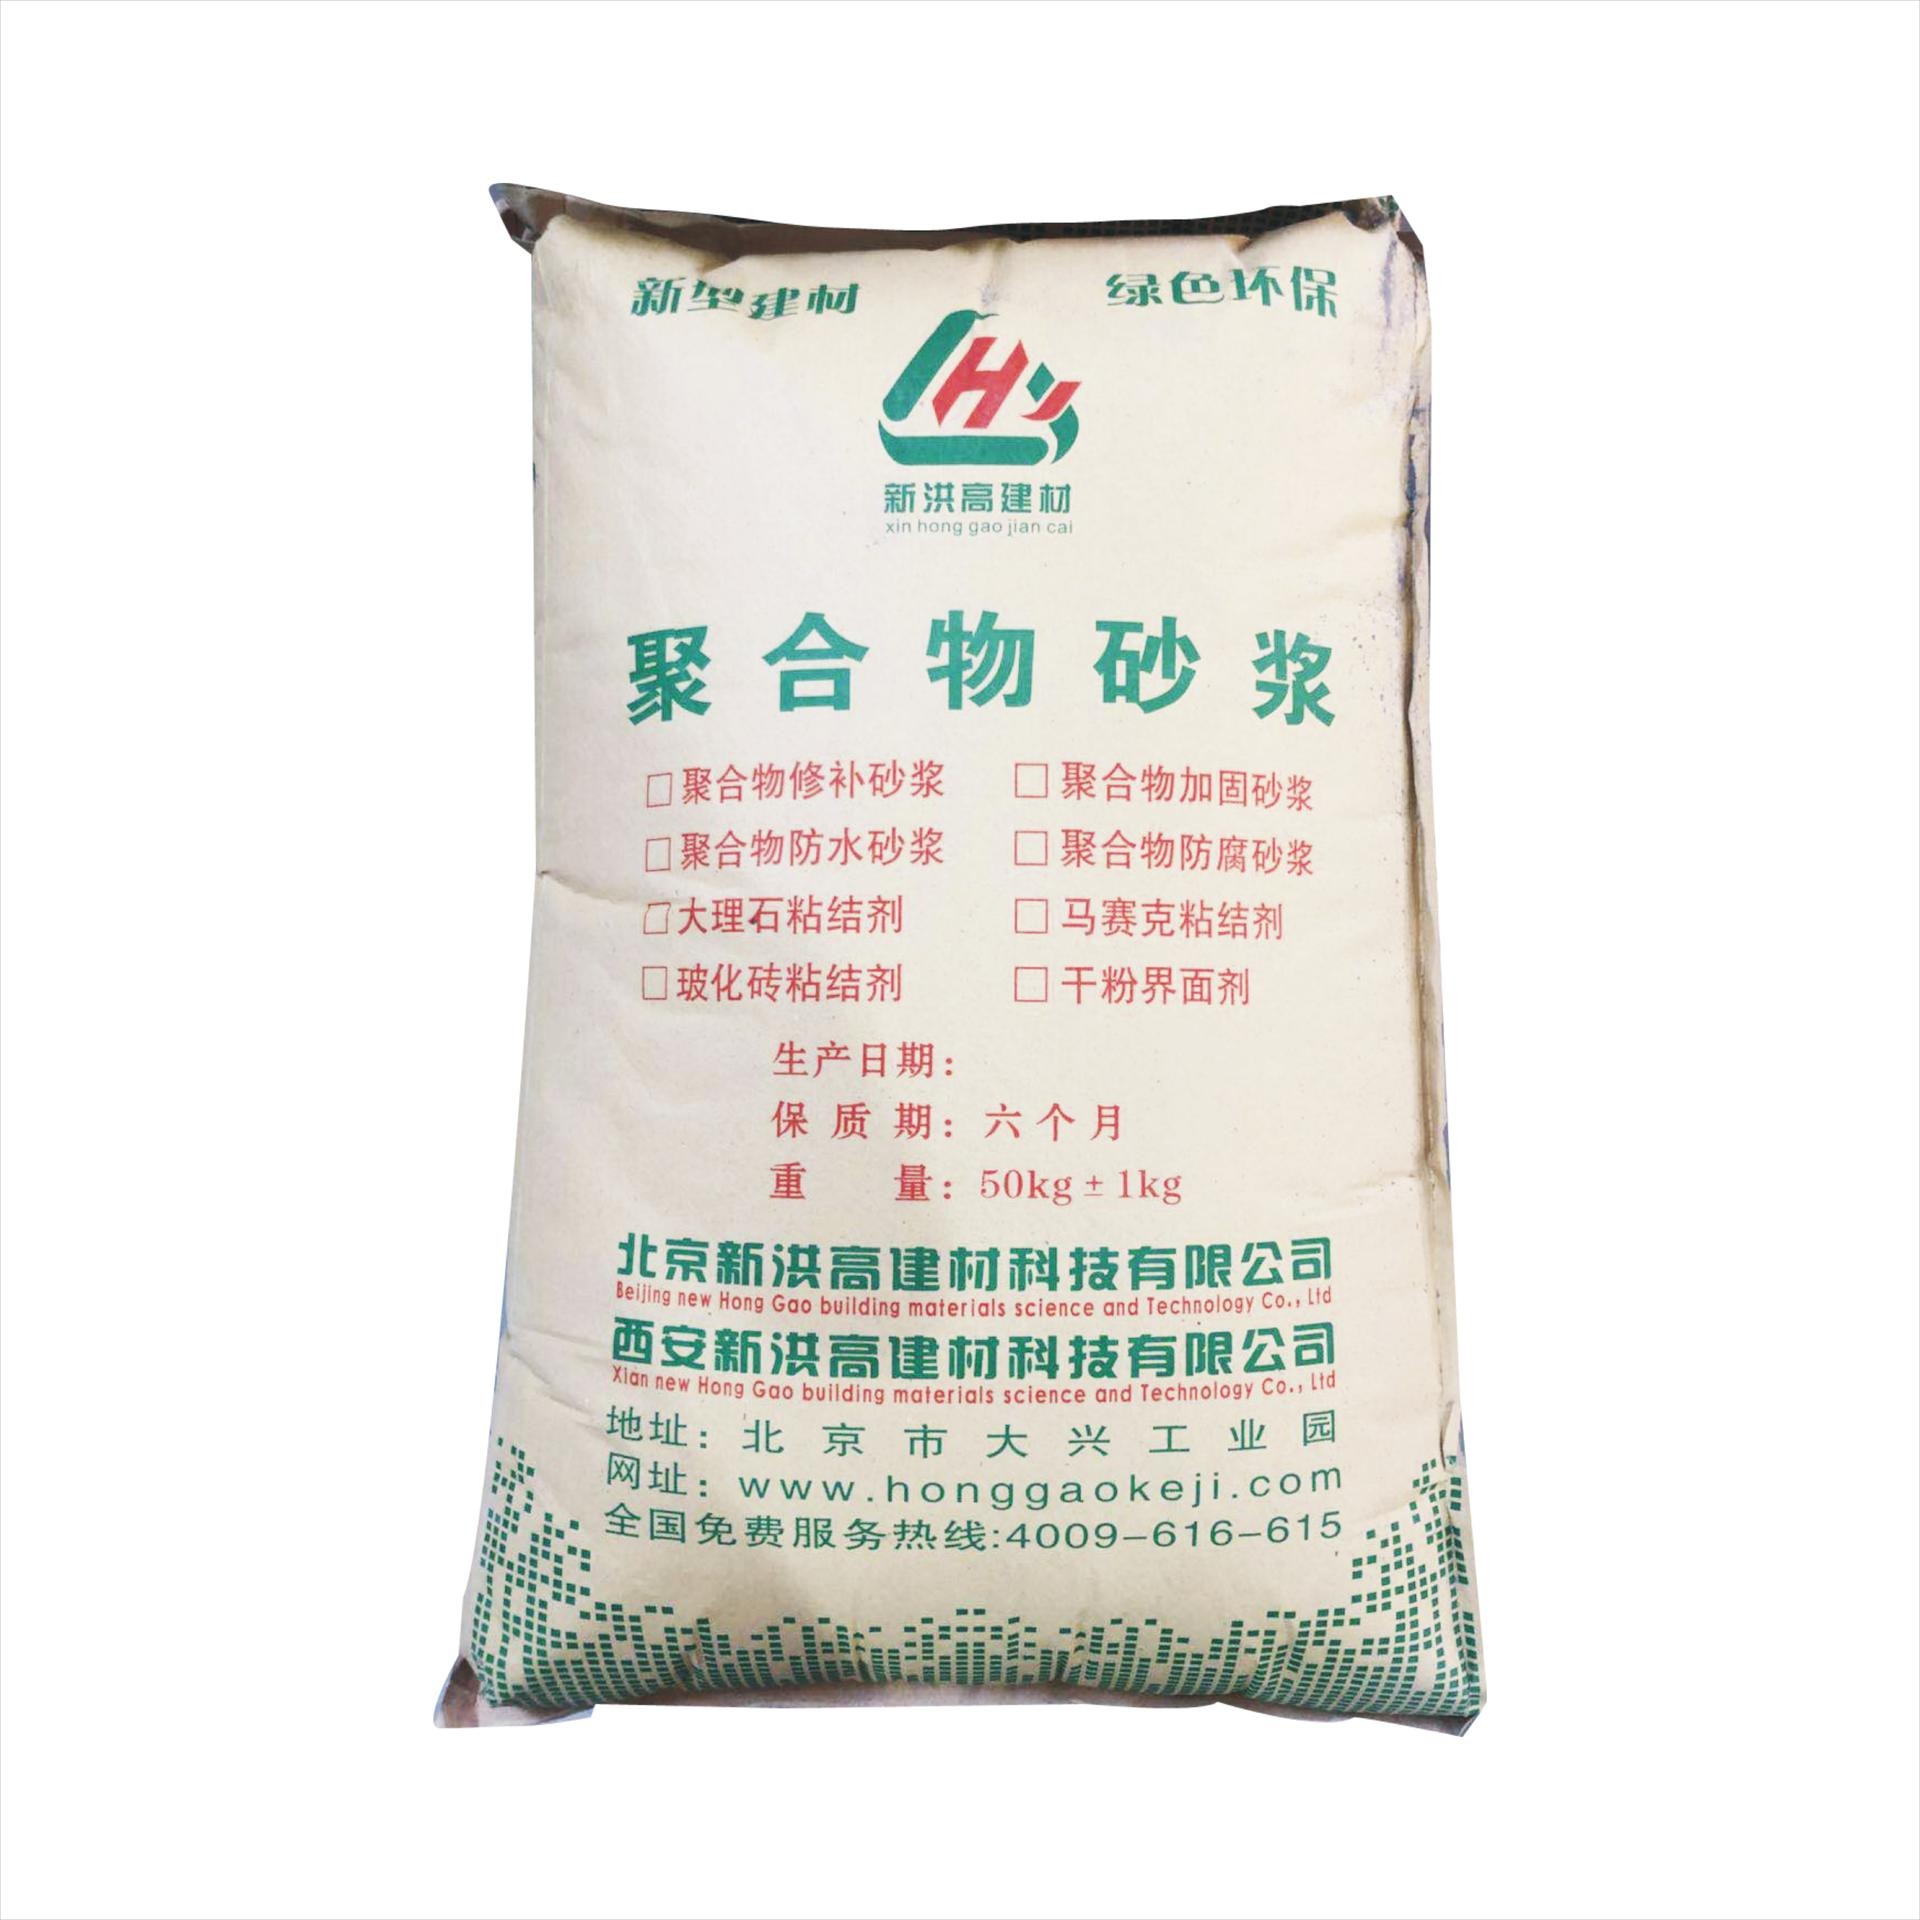 新洪高水泥砂浆 北京市聚合物防静电水泥砂浆25kg/袋 厂家直销